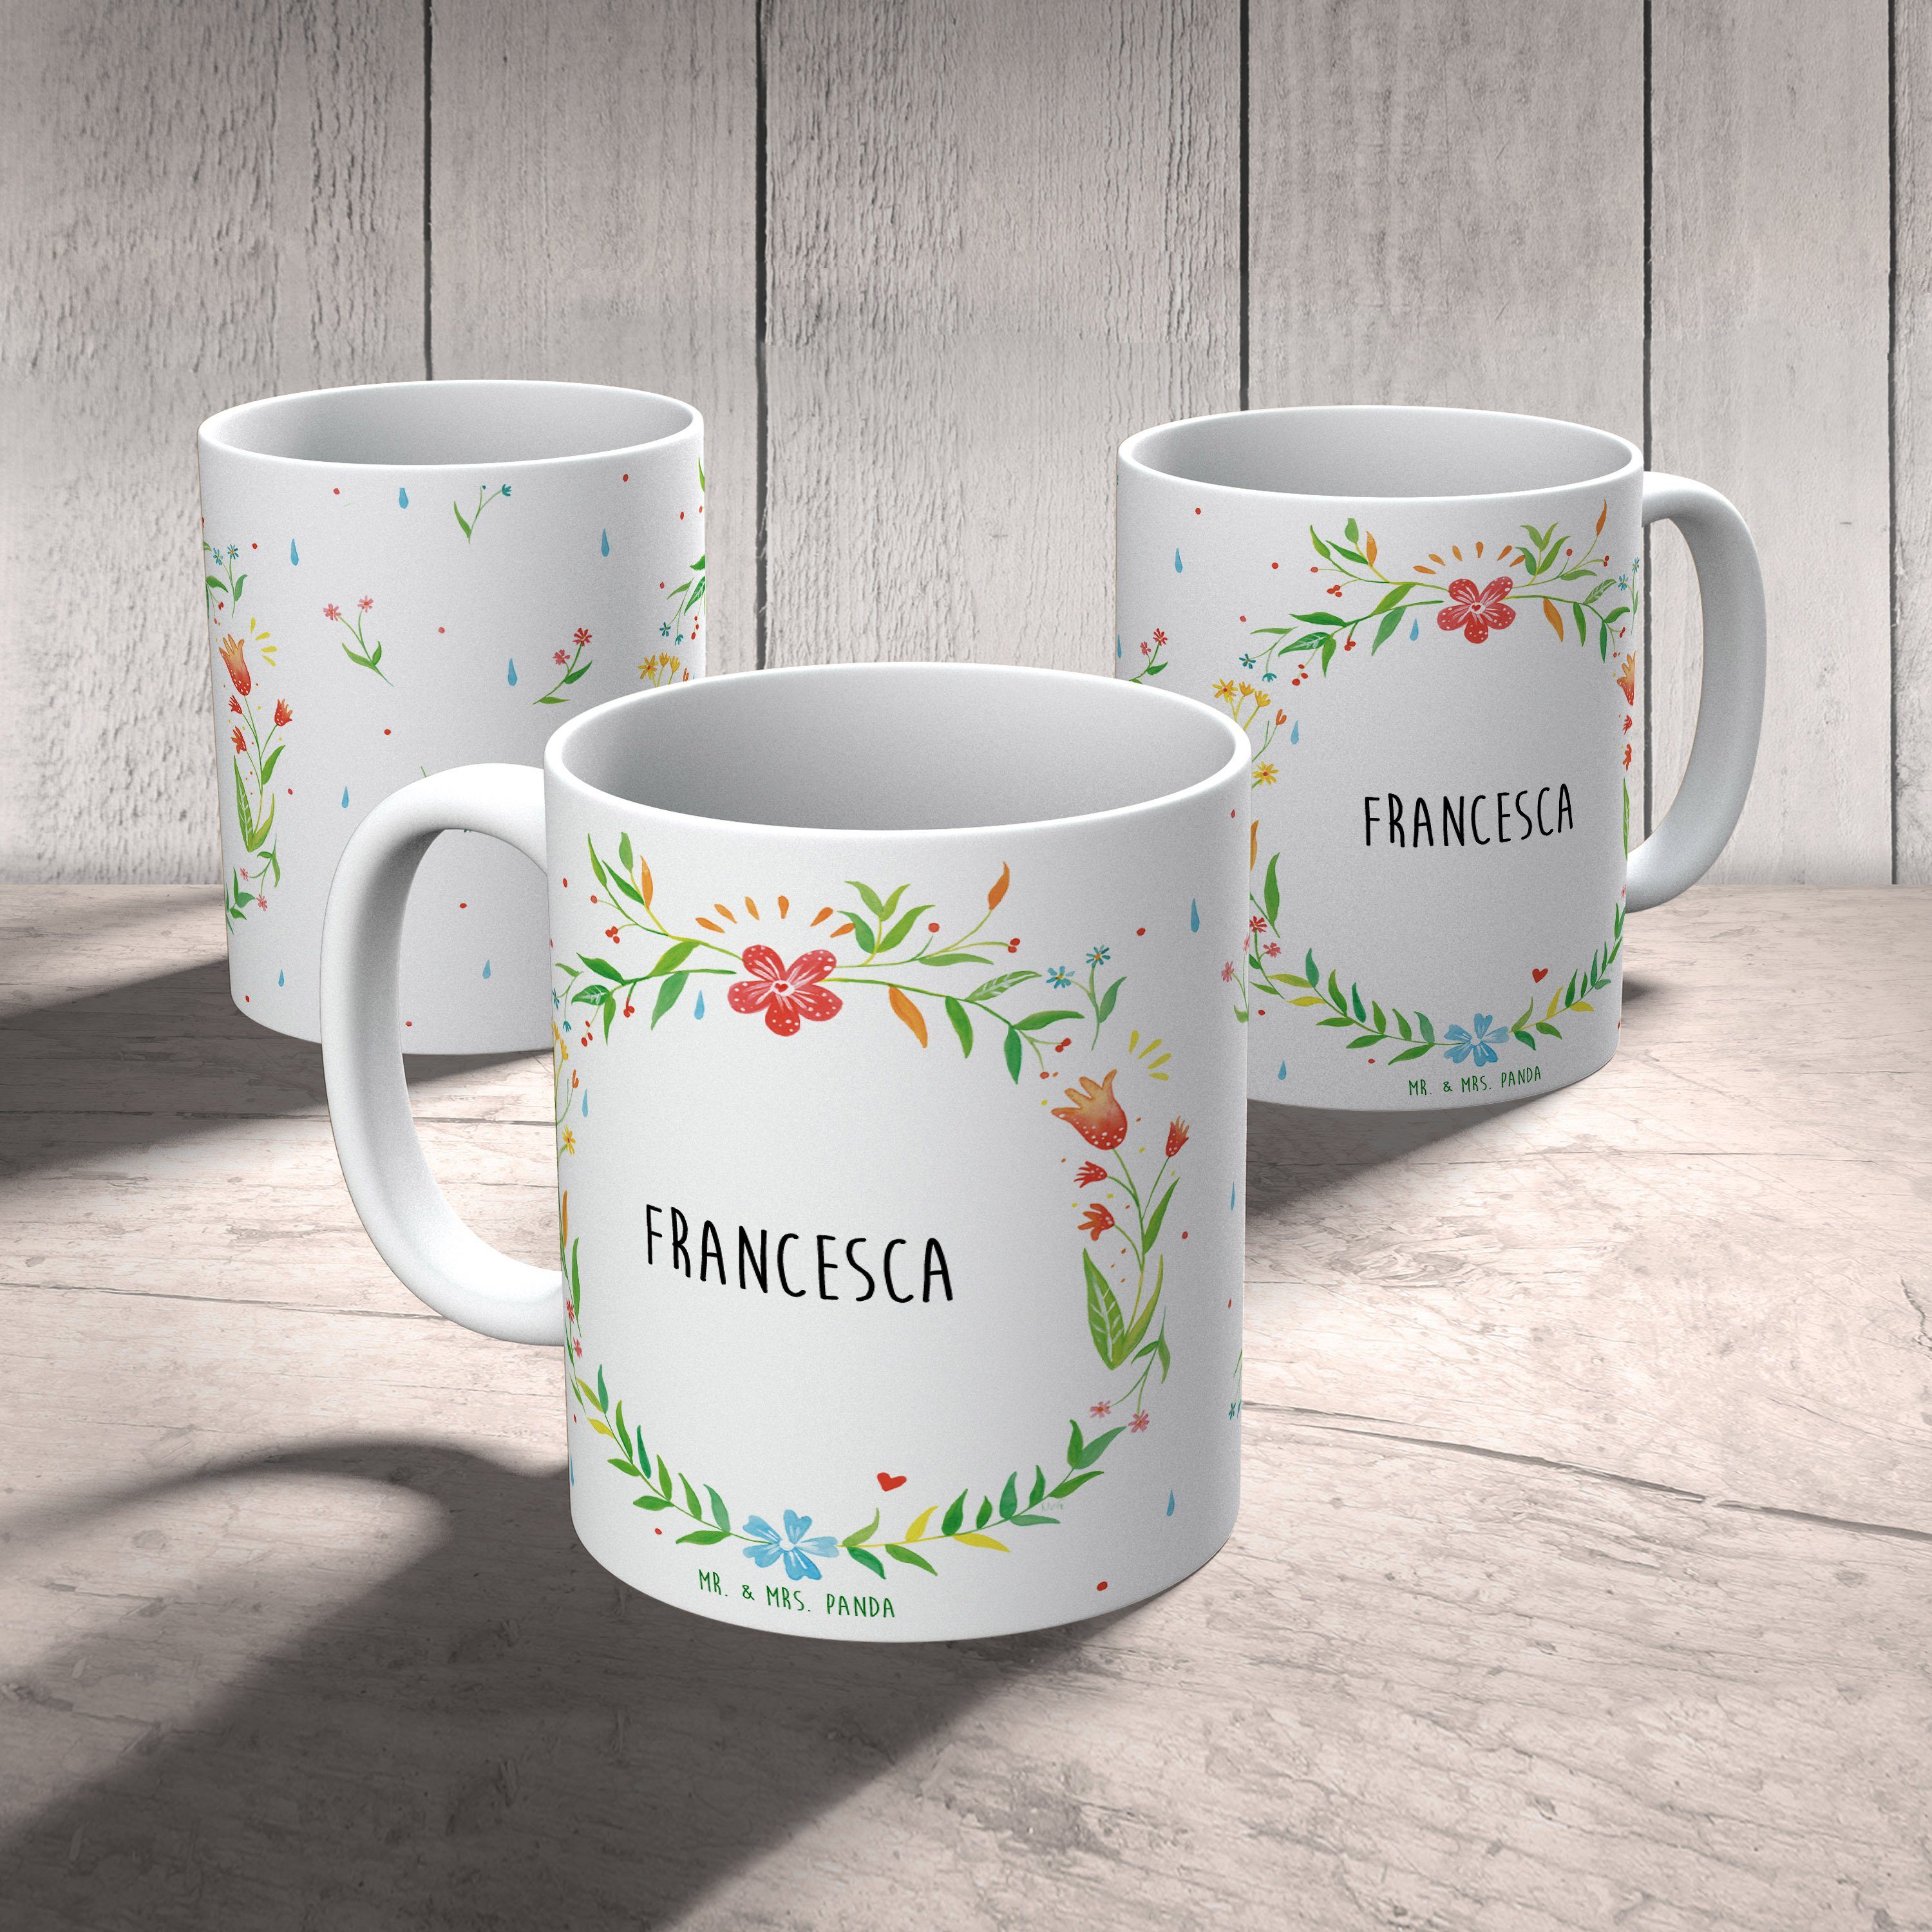 Tasse - Geschenk Mrs. Mr. Becher, Kaffeebecher, Francesca Panda Tasse, & Keramik Kaffeetas, Geschenk,